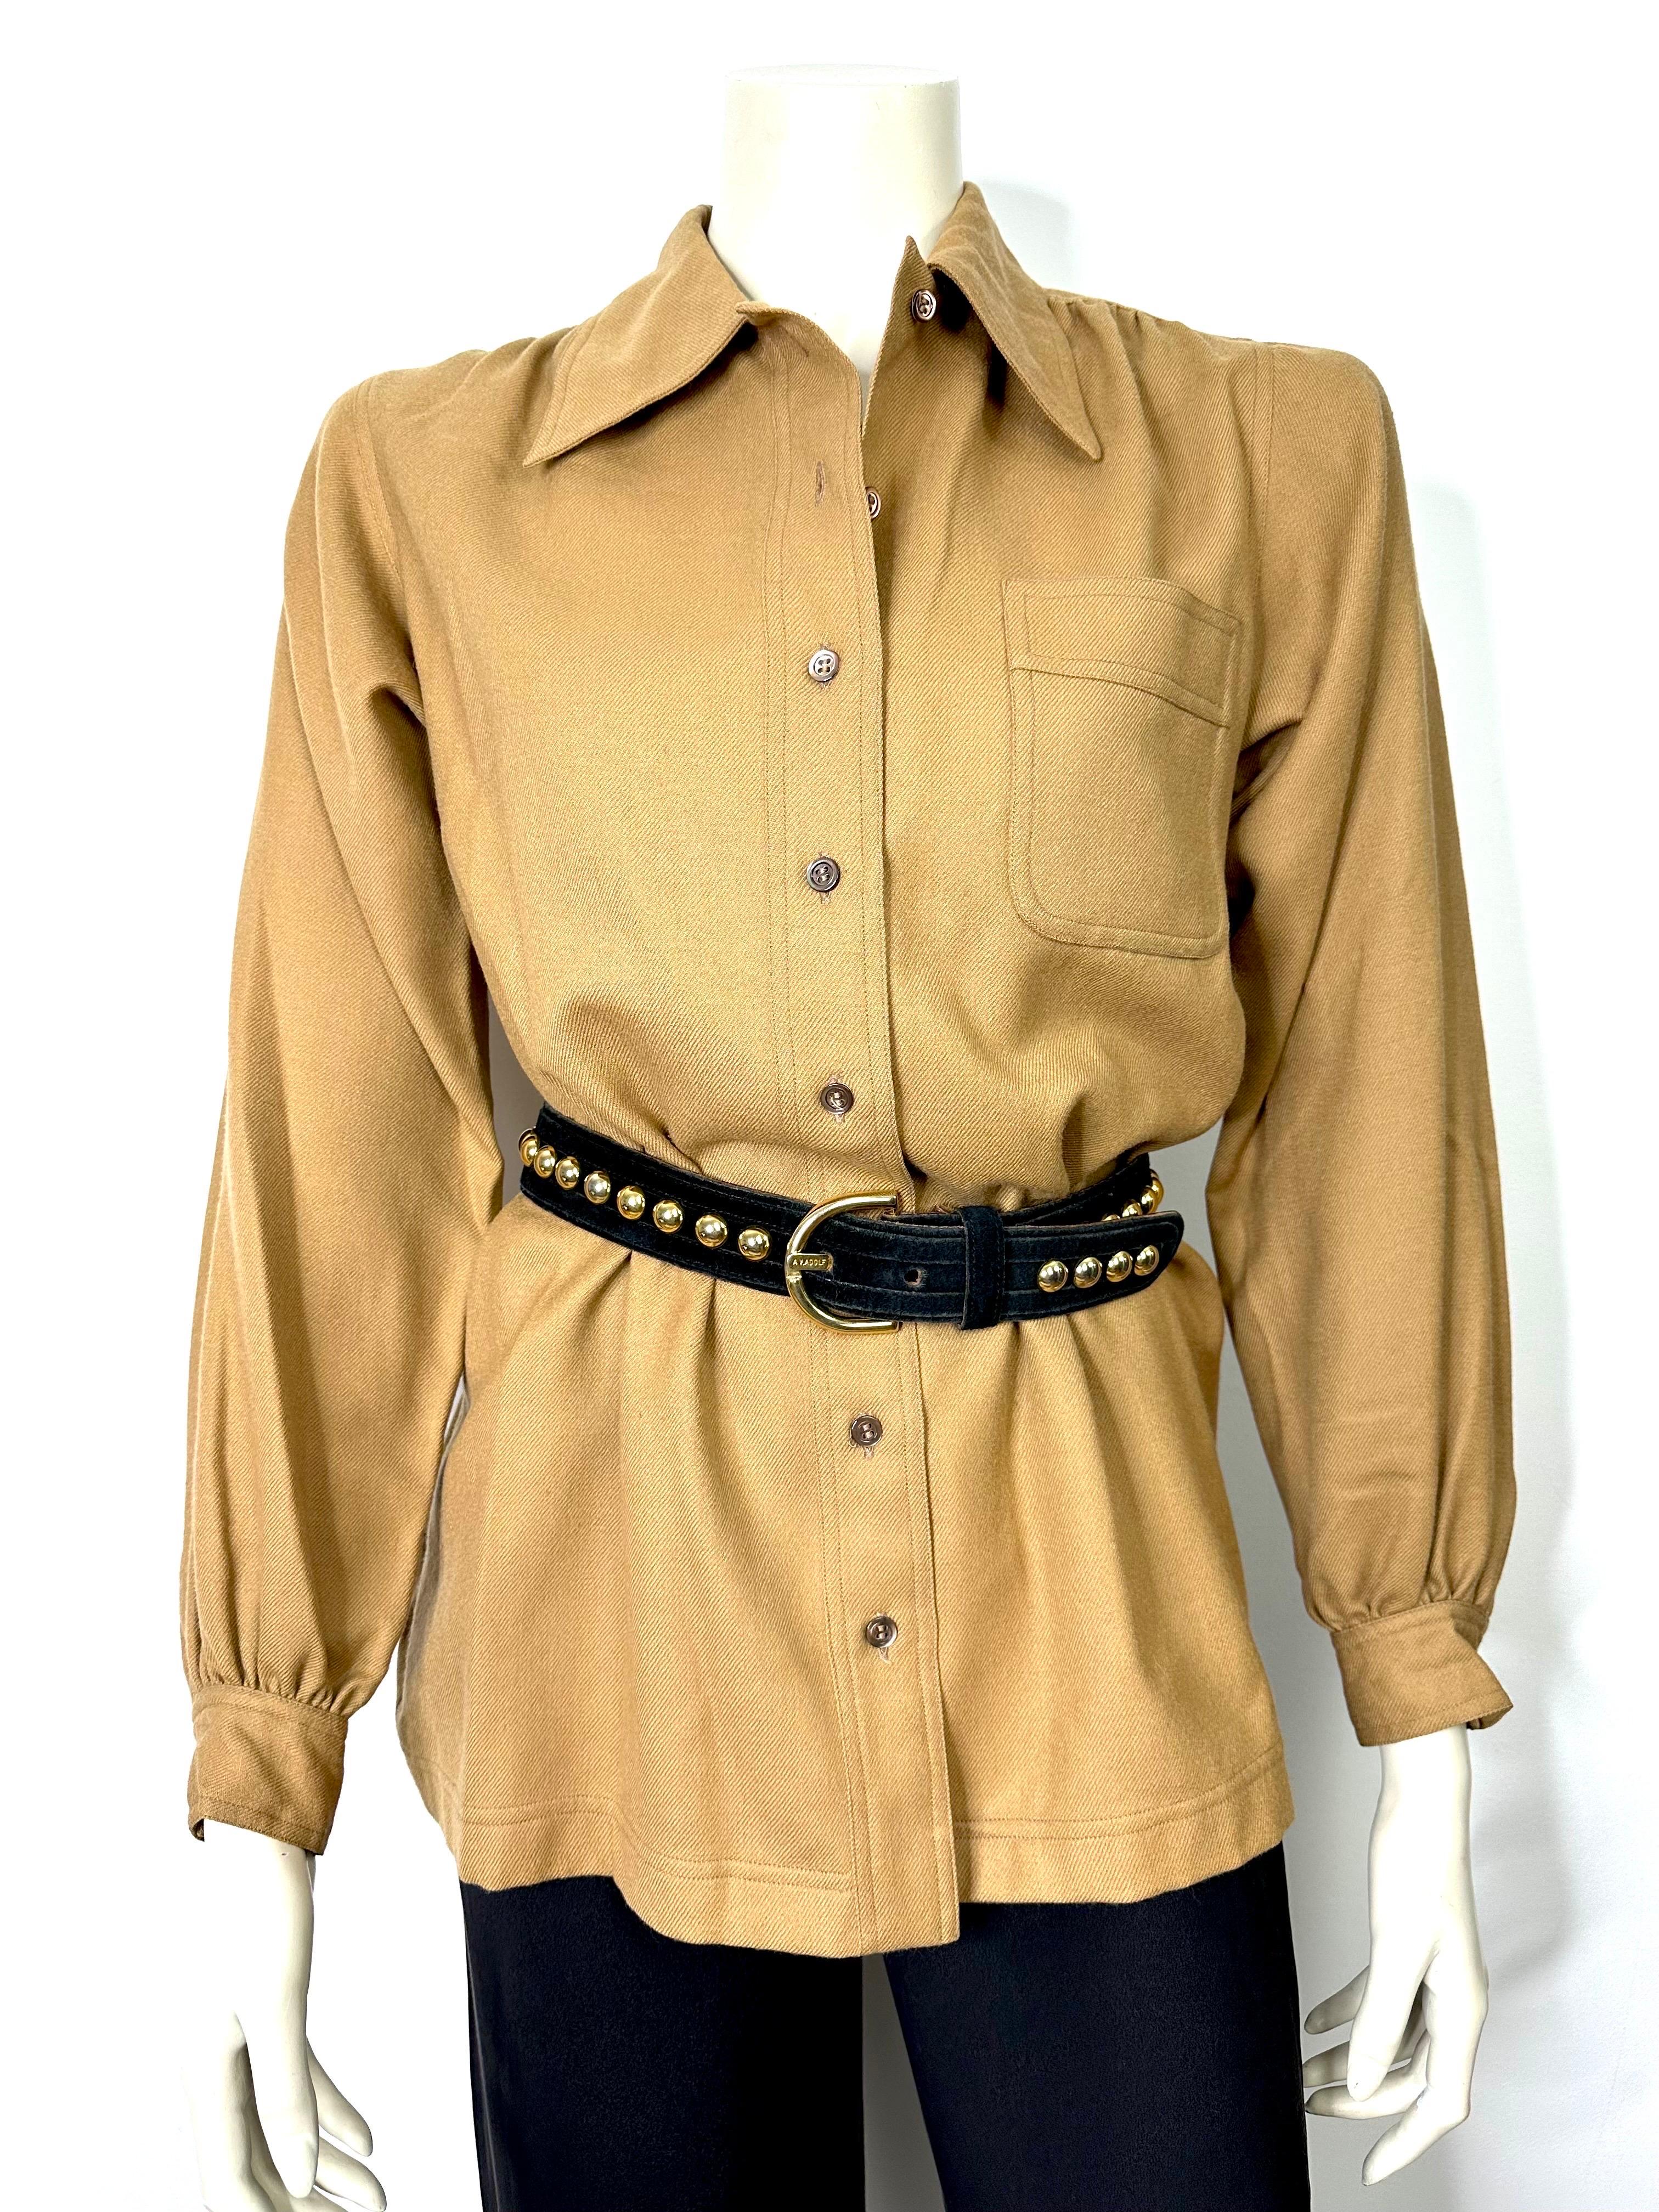 Yves saint Laurent Hemd im Safari-Stil der 1970er Jahre aus brauner Wolle, ungefüttert, mit Knopfverschluss vorne und an den Manschetten.
Eine aufgesetzte Tasche auf der Brust.
Falten an Schultern und Rücken.
Attraktiver spitzer Kragen.
Größe 40,